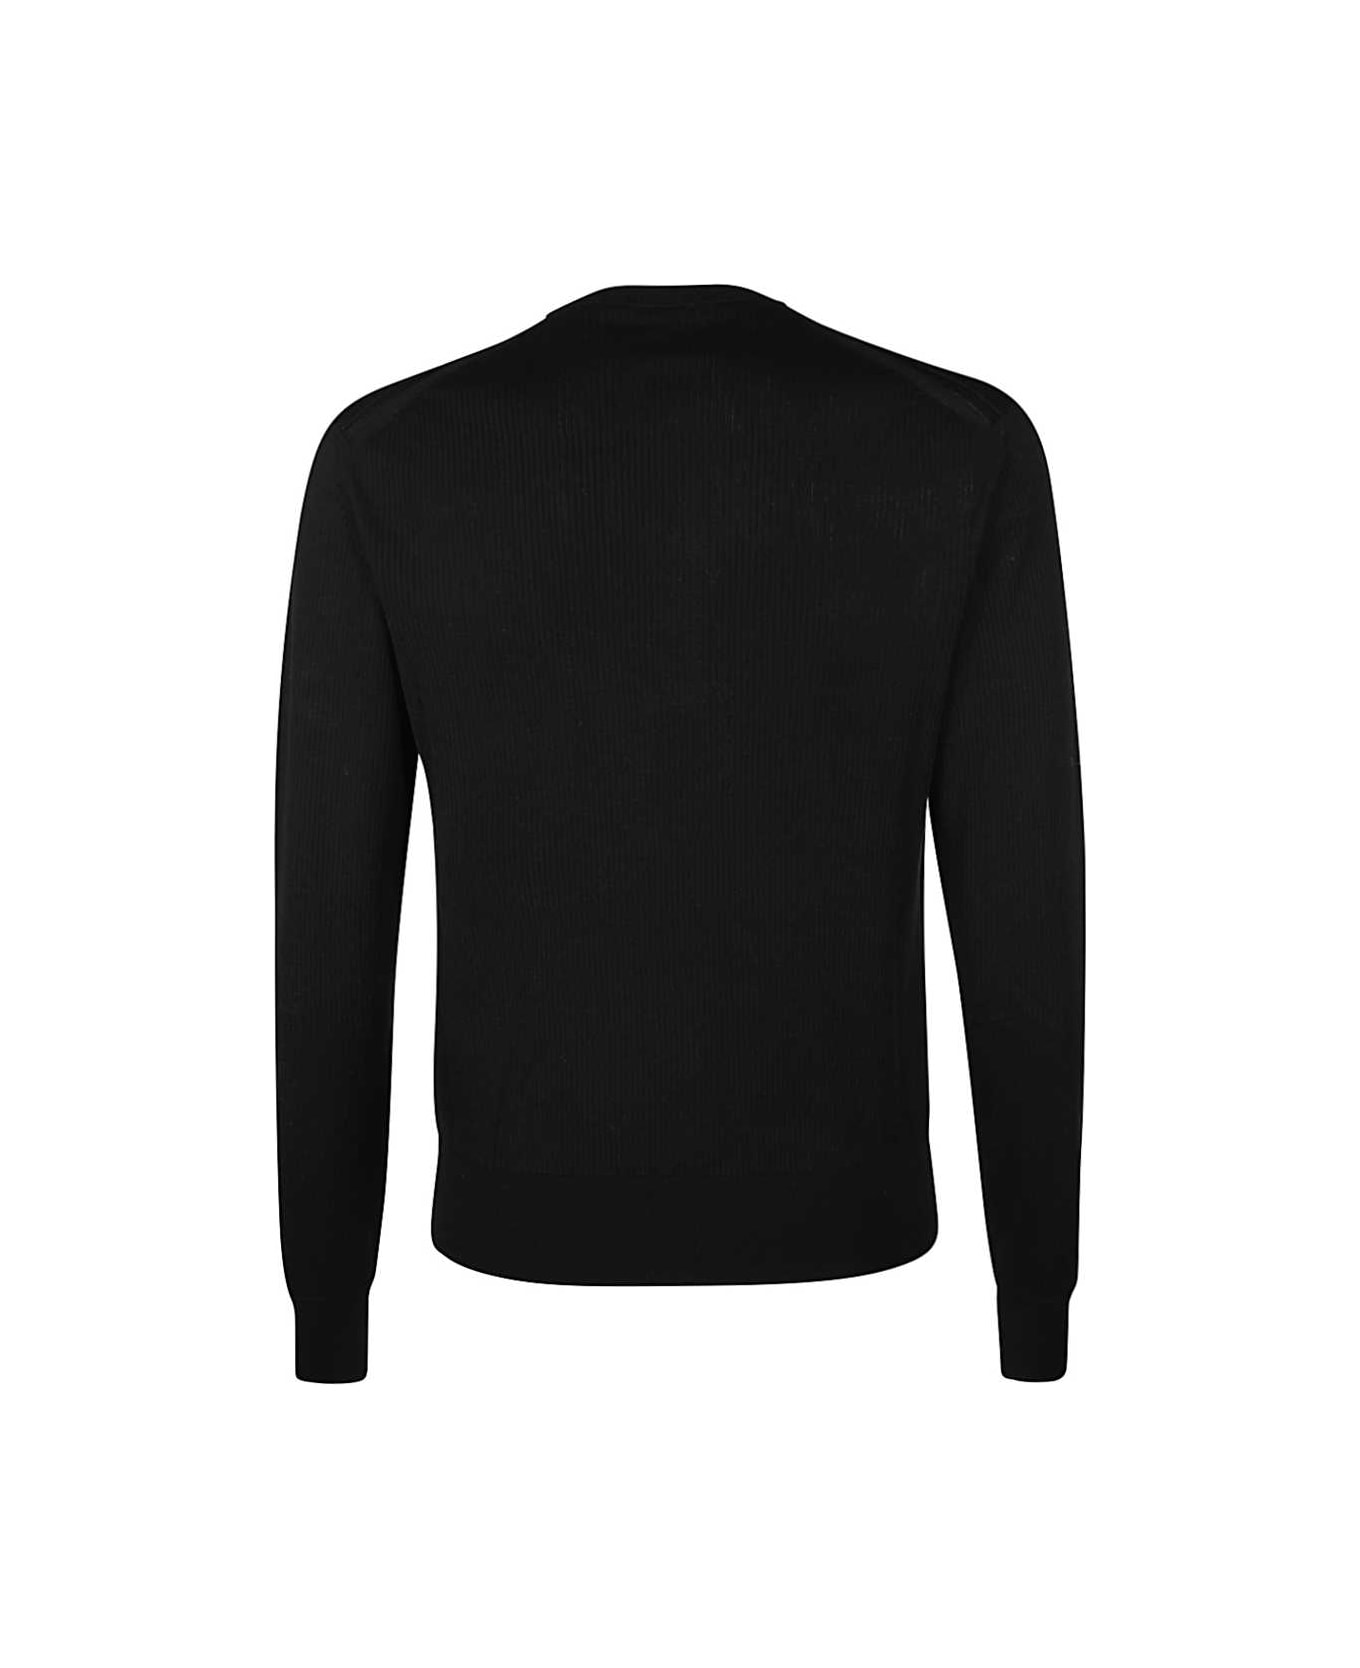 Tom Ford Cotton-silk Blend Crew-neck Sweater - black ニットウェア